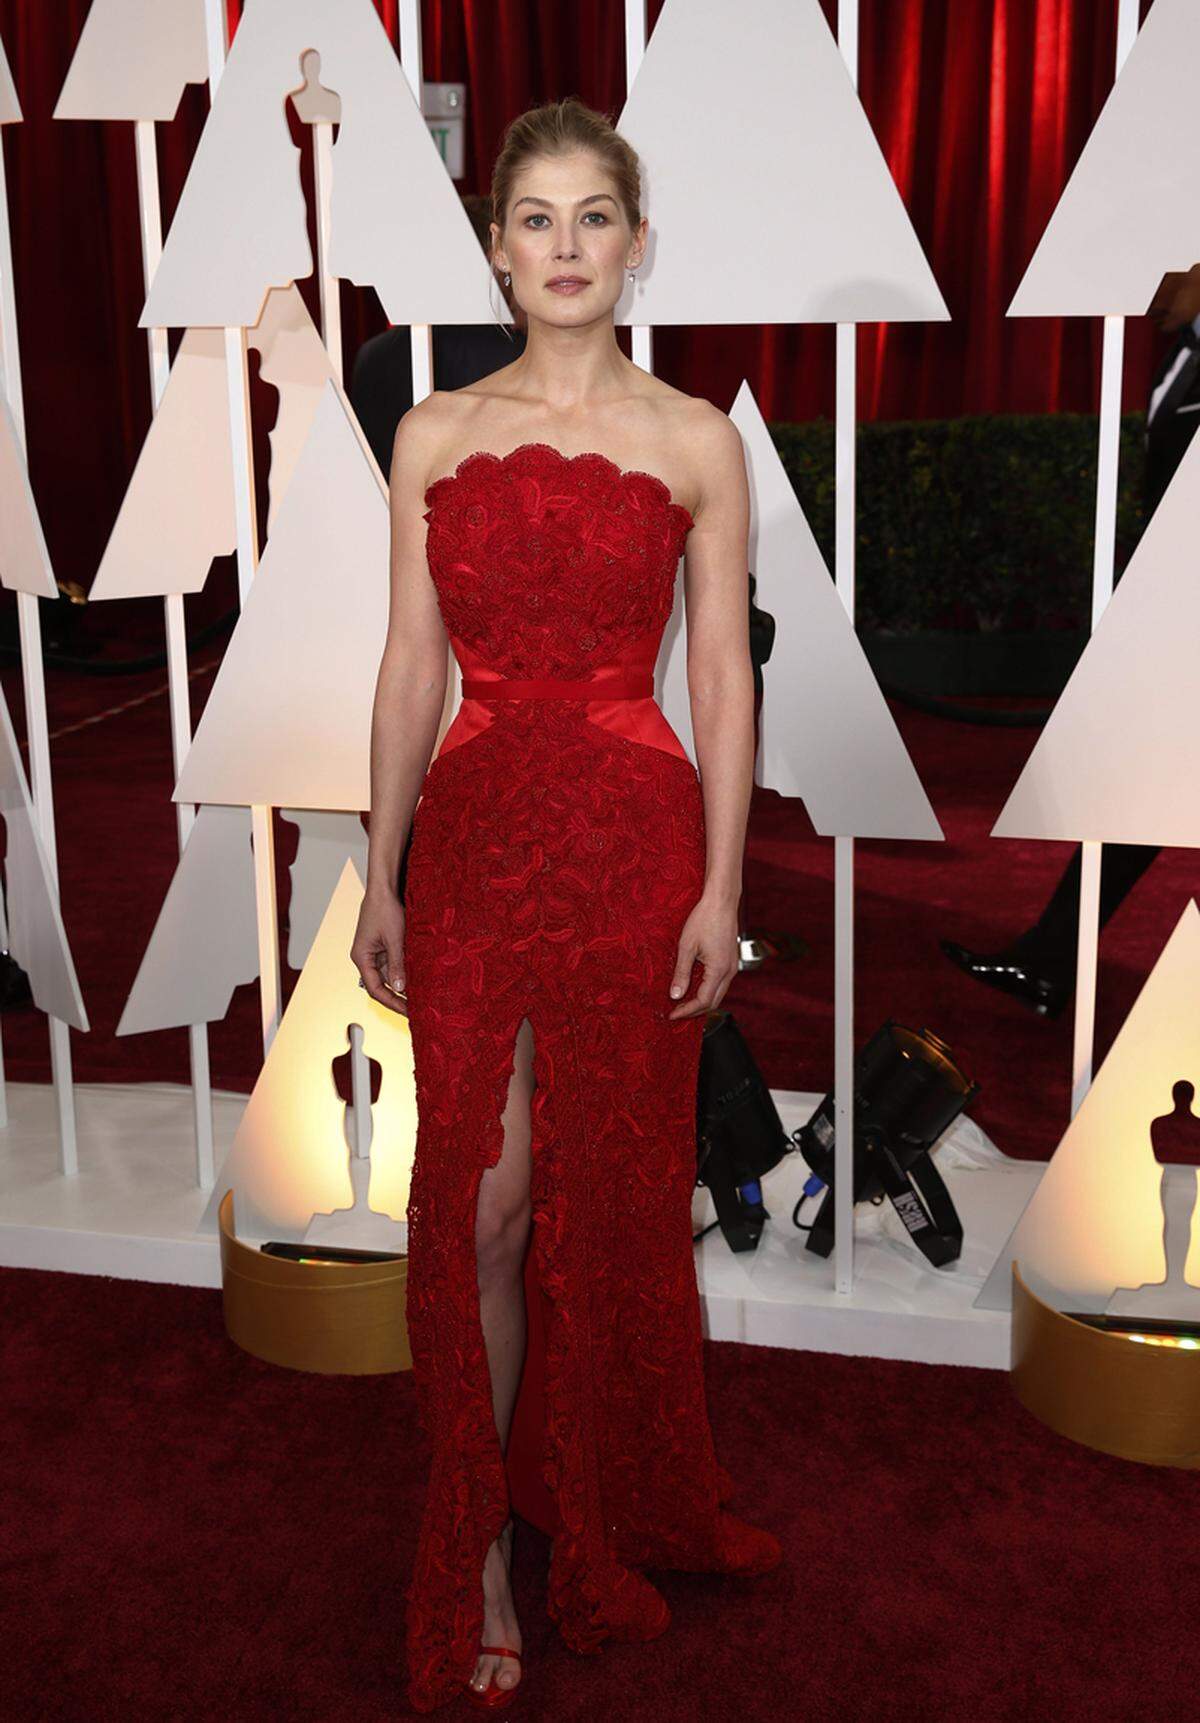 Rosamund Pike: "Gone Girl" gewann zwar keinen Oscar, doch sah sie im schmalen roten Spitzenkleid von Givenchy sexy und zugleich vornehm aus.